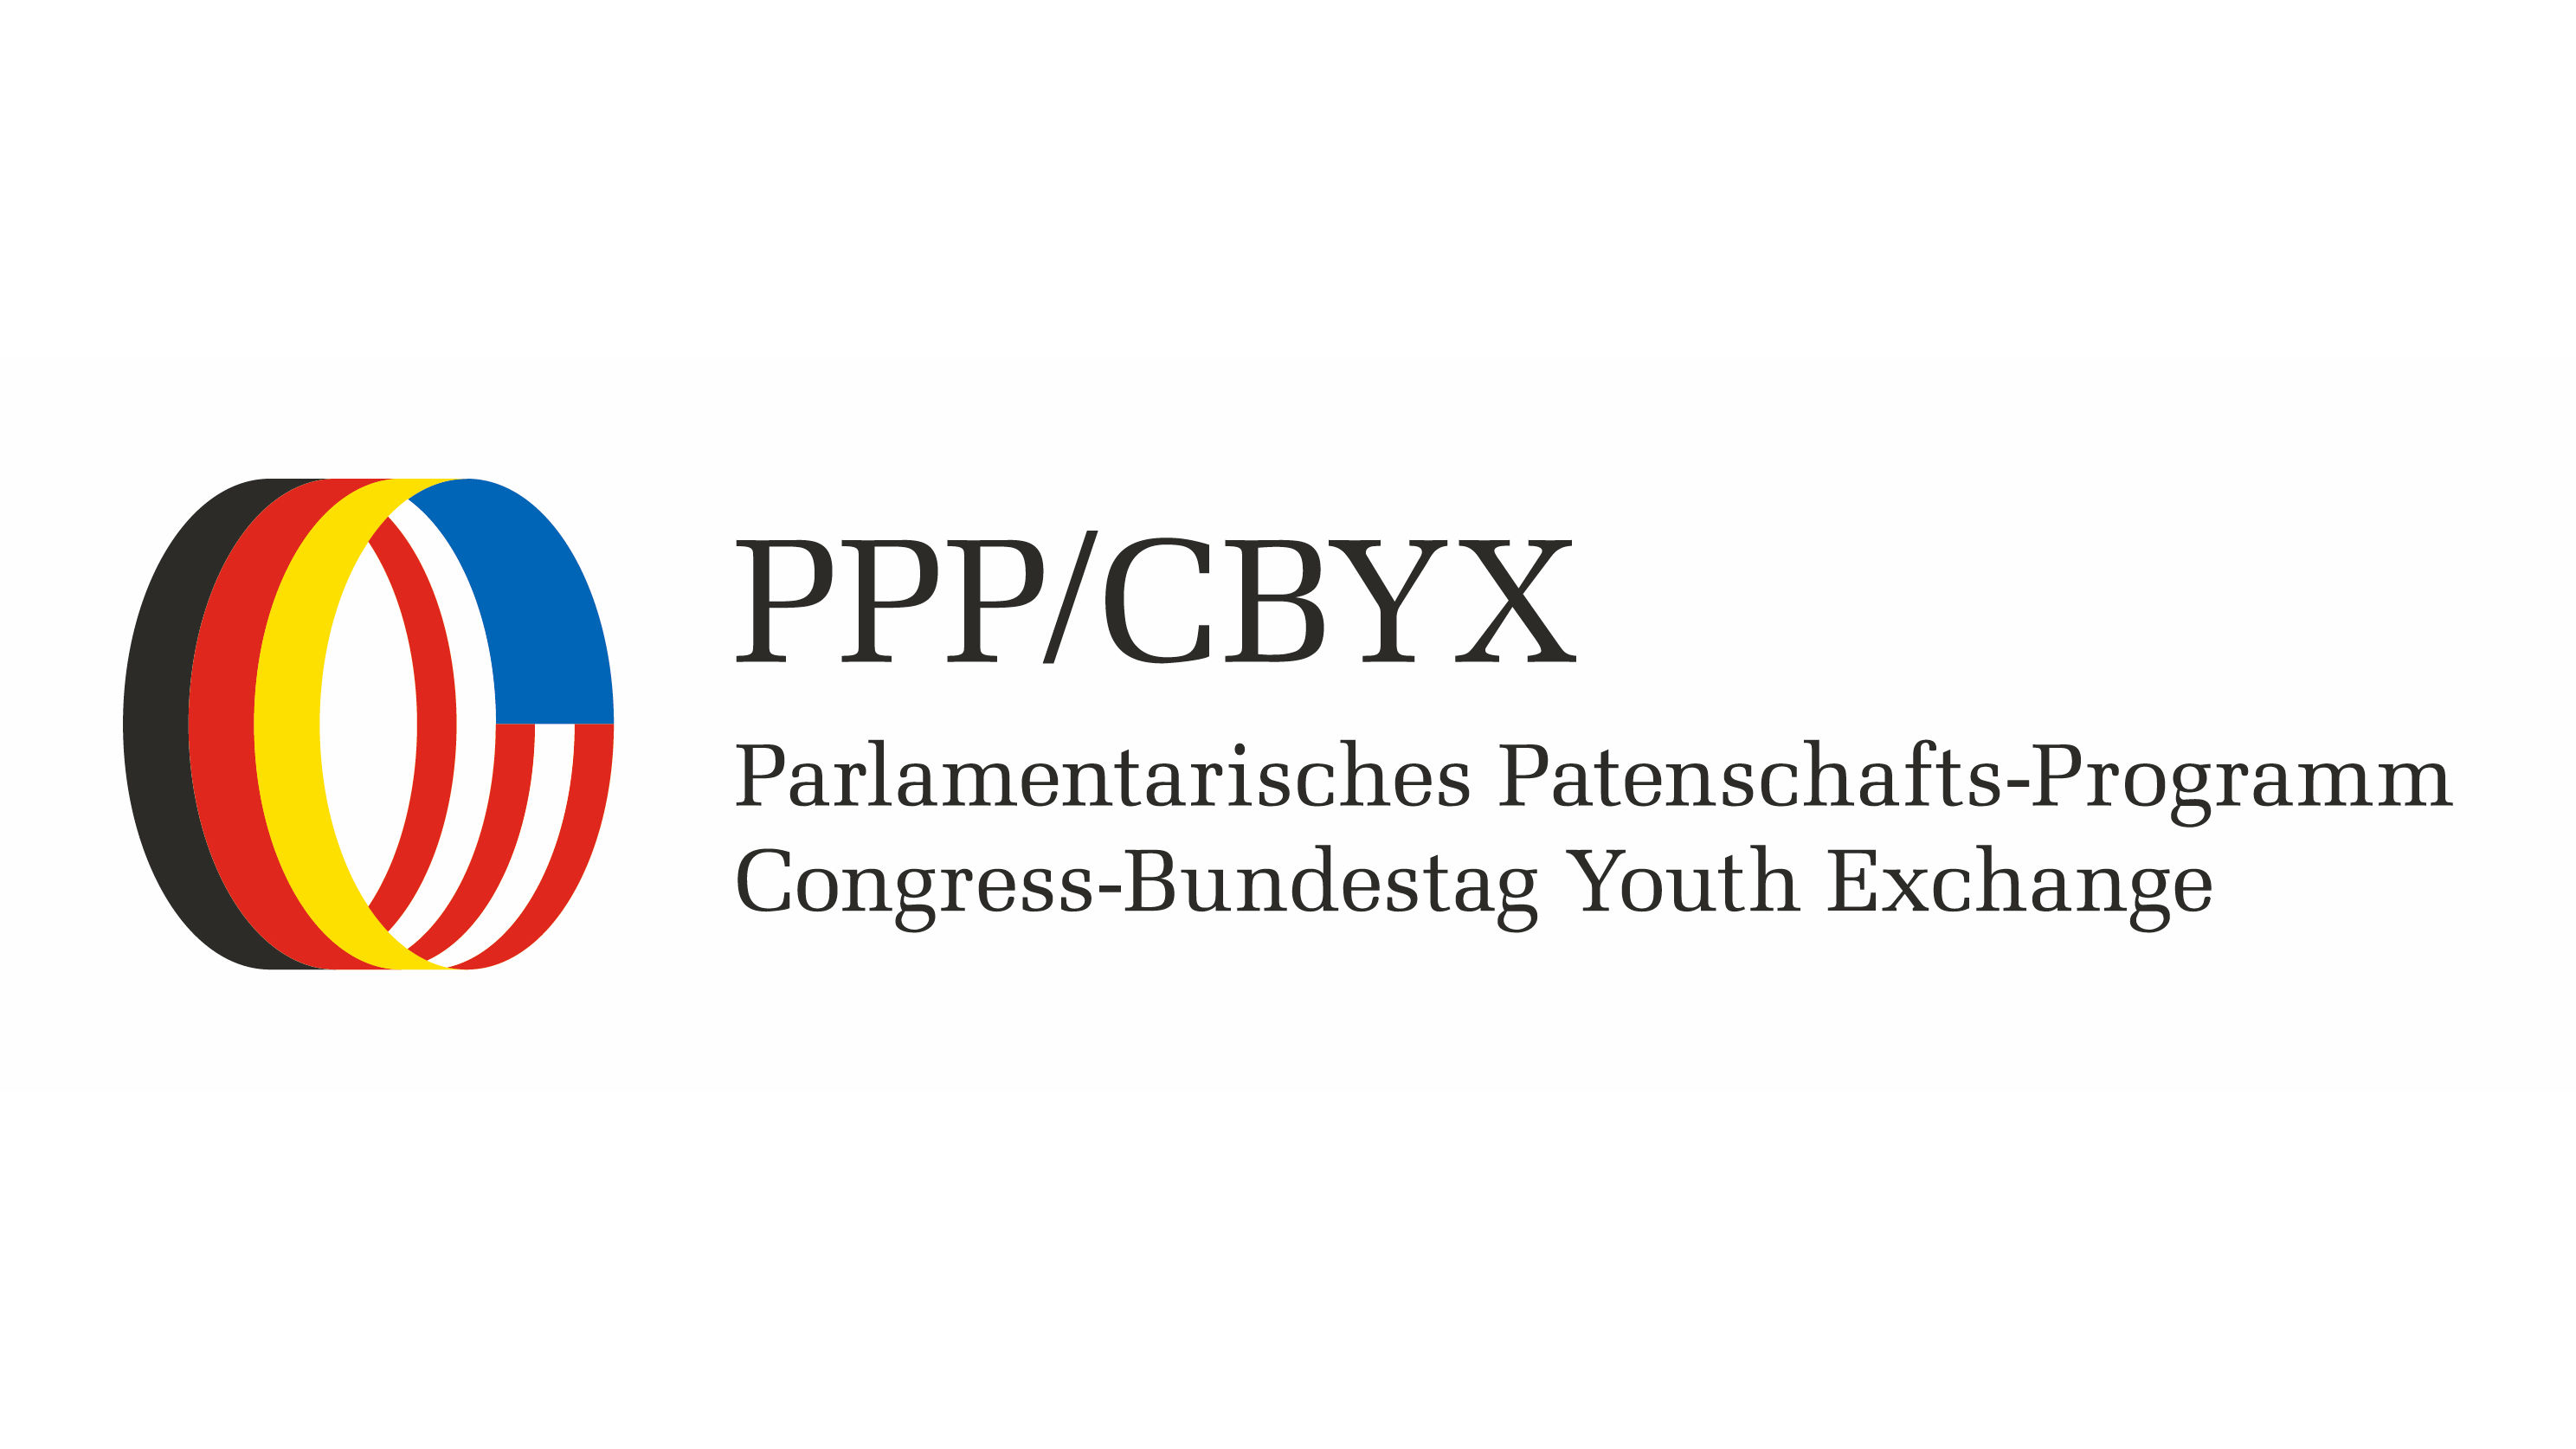 PPP/CBYX Program